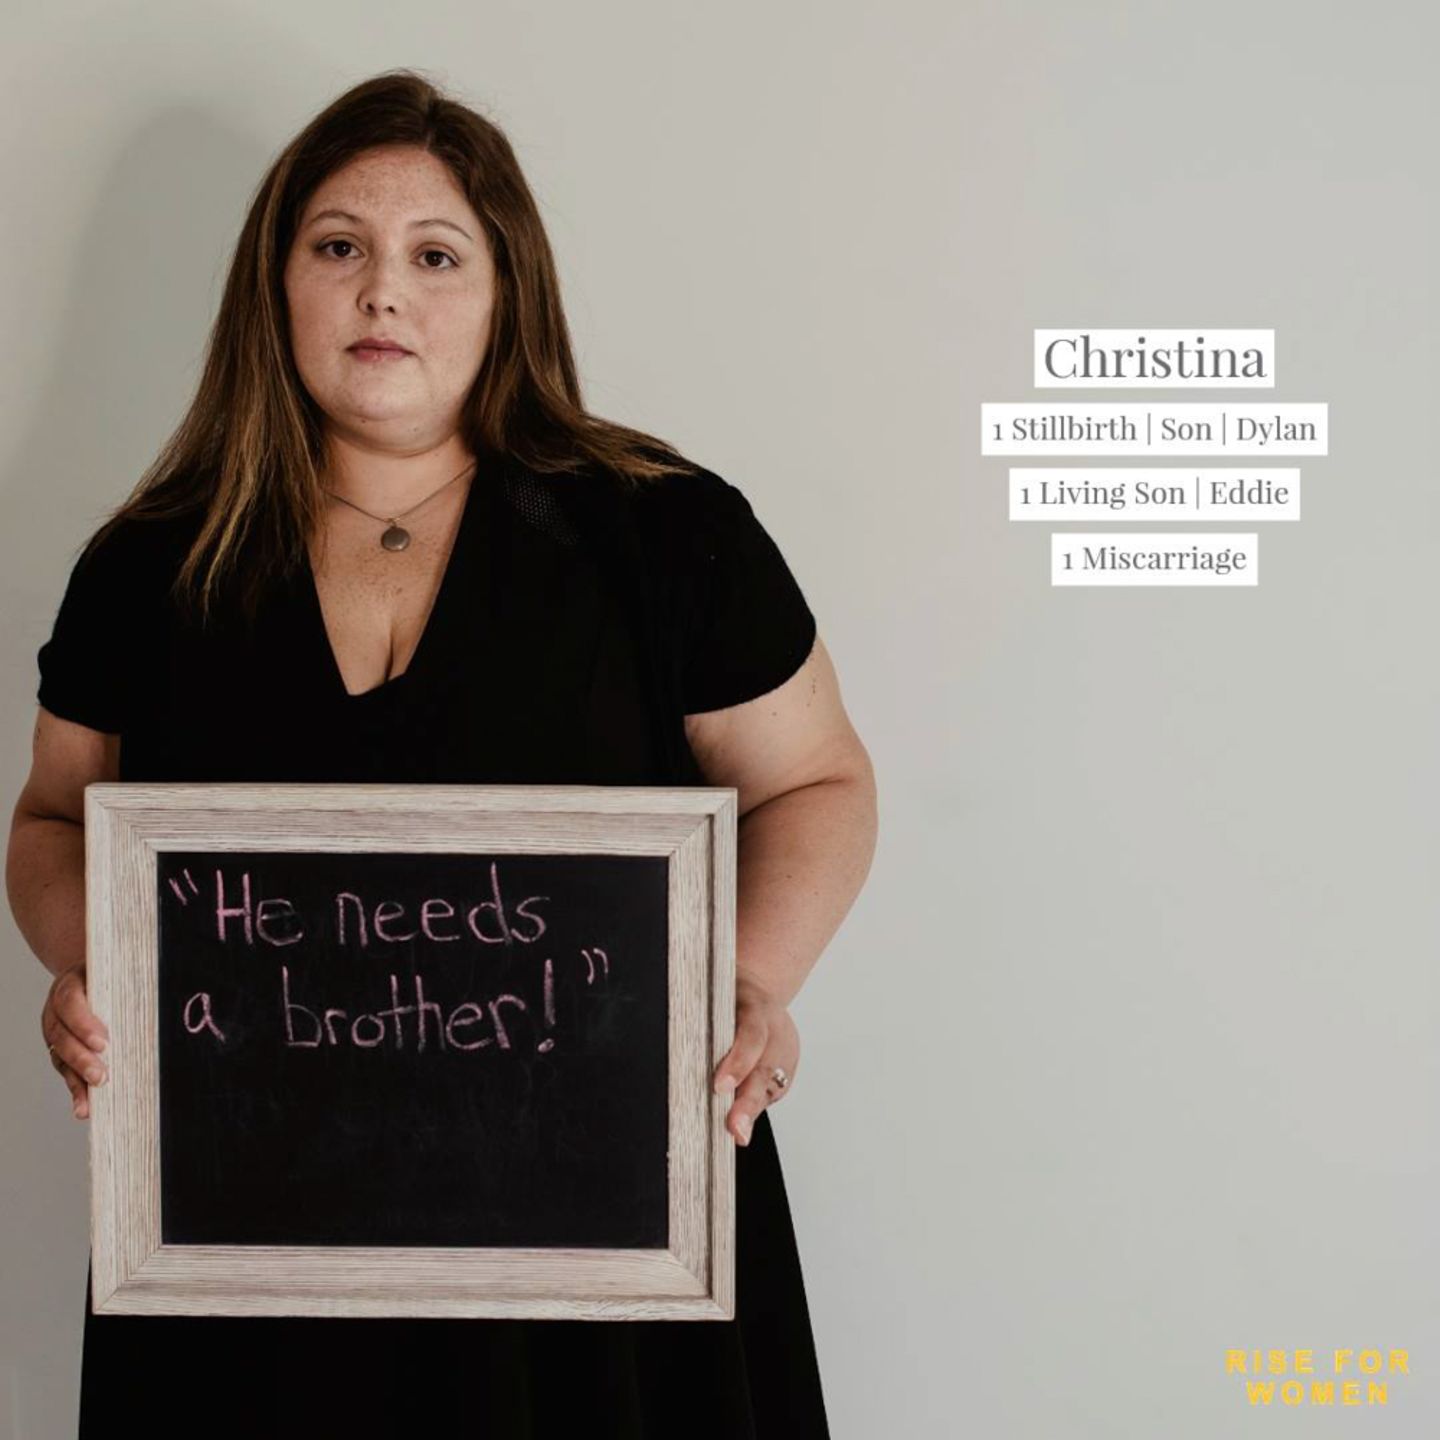 Sternenkinder: Frauen teilen schmerzhafte Sätze nach Verlust ihrer Kinder